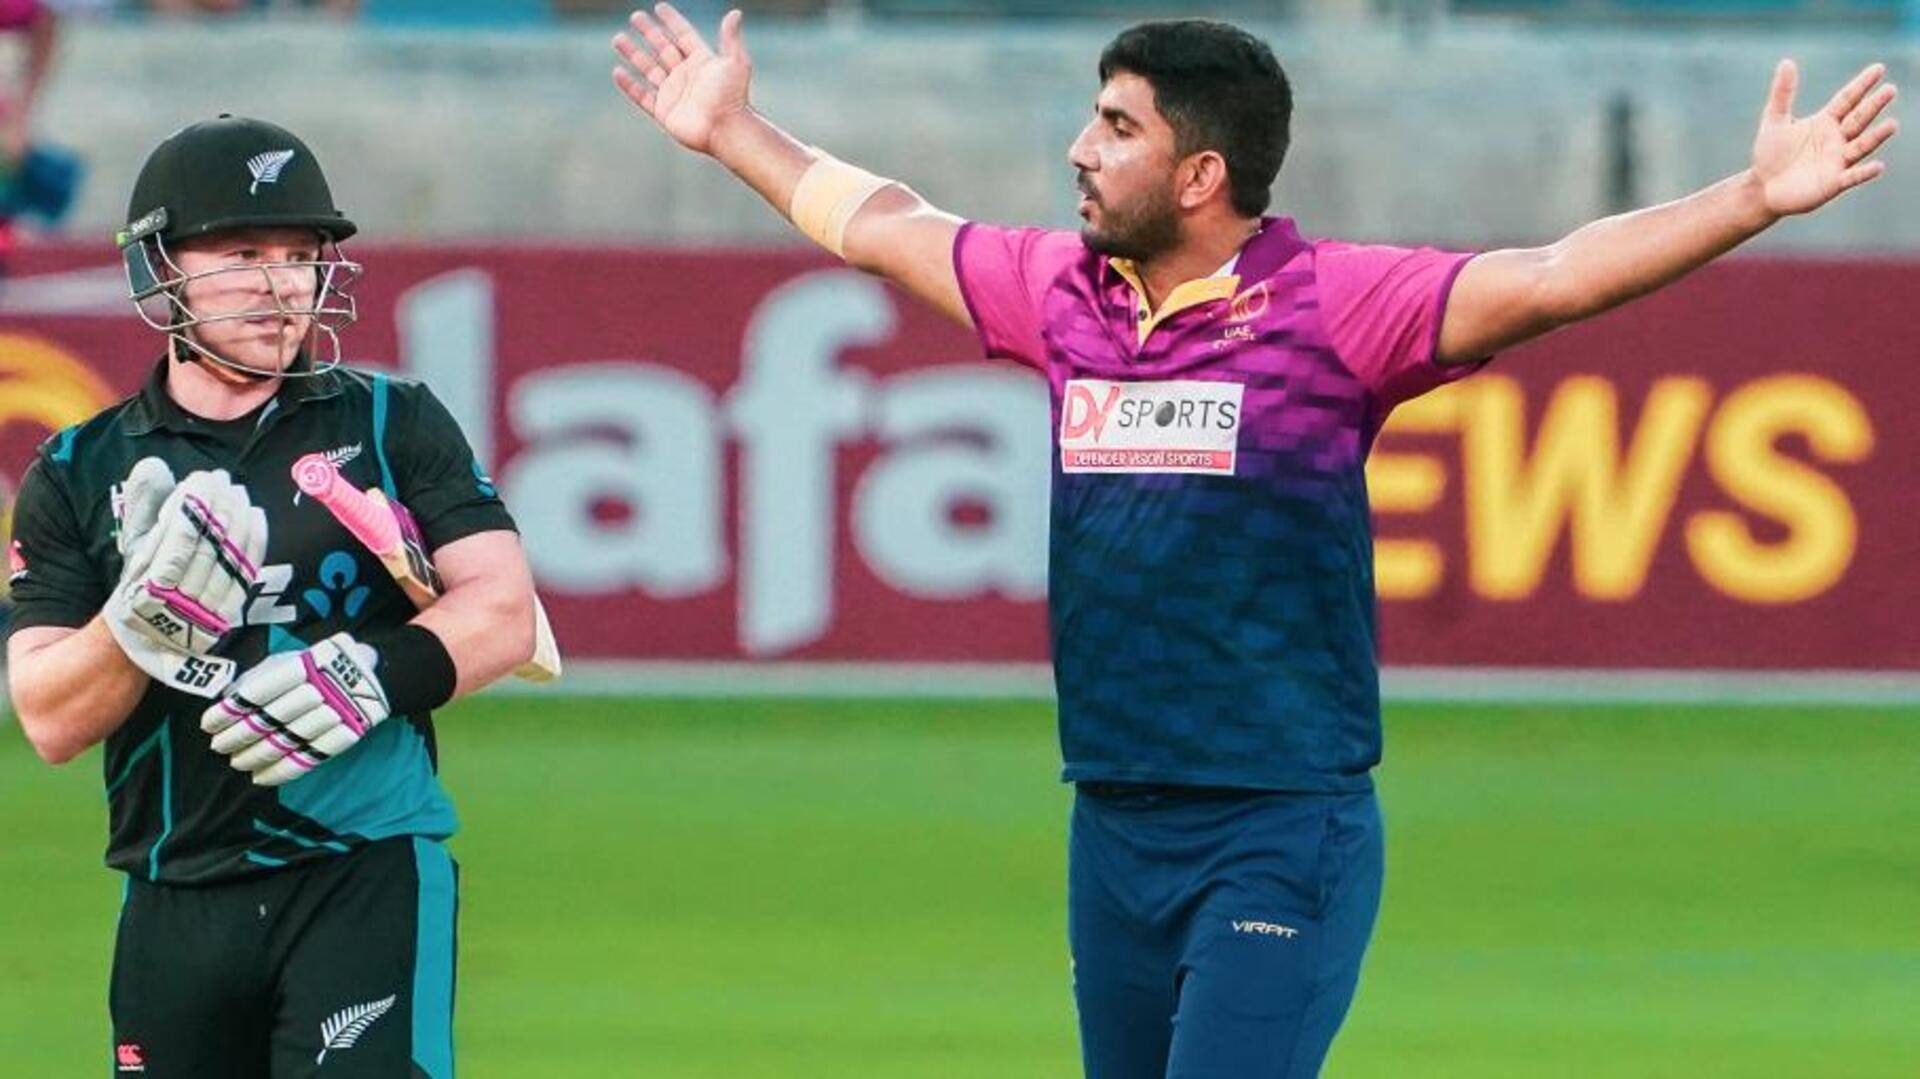 UAE बनाम न्यूजीलैंड: जुनैद सिद्दीकी ने चटकाए 3 विकेट, जानिए उनके आंकड़े